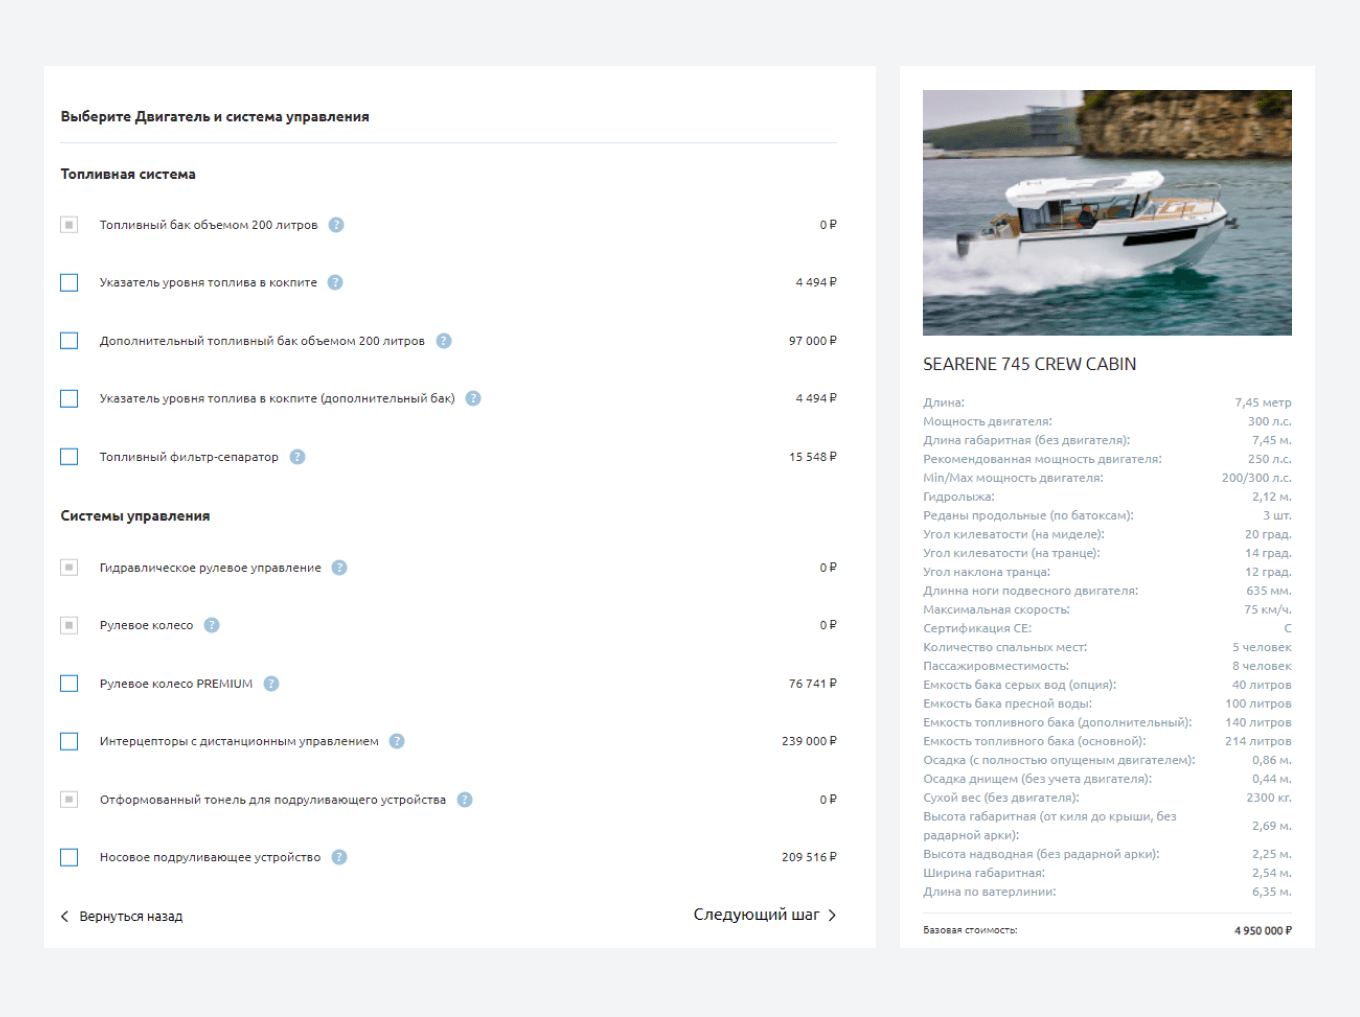 Сайт компании SEARENE yachts